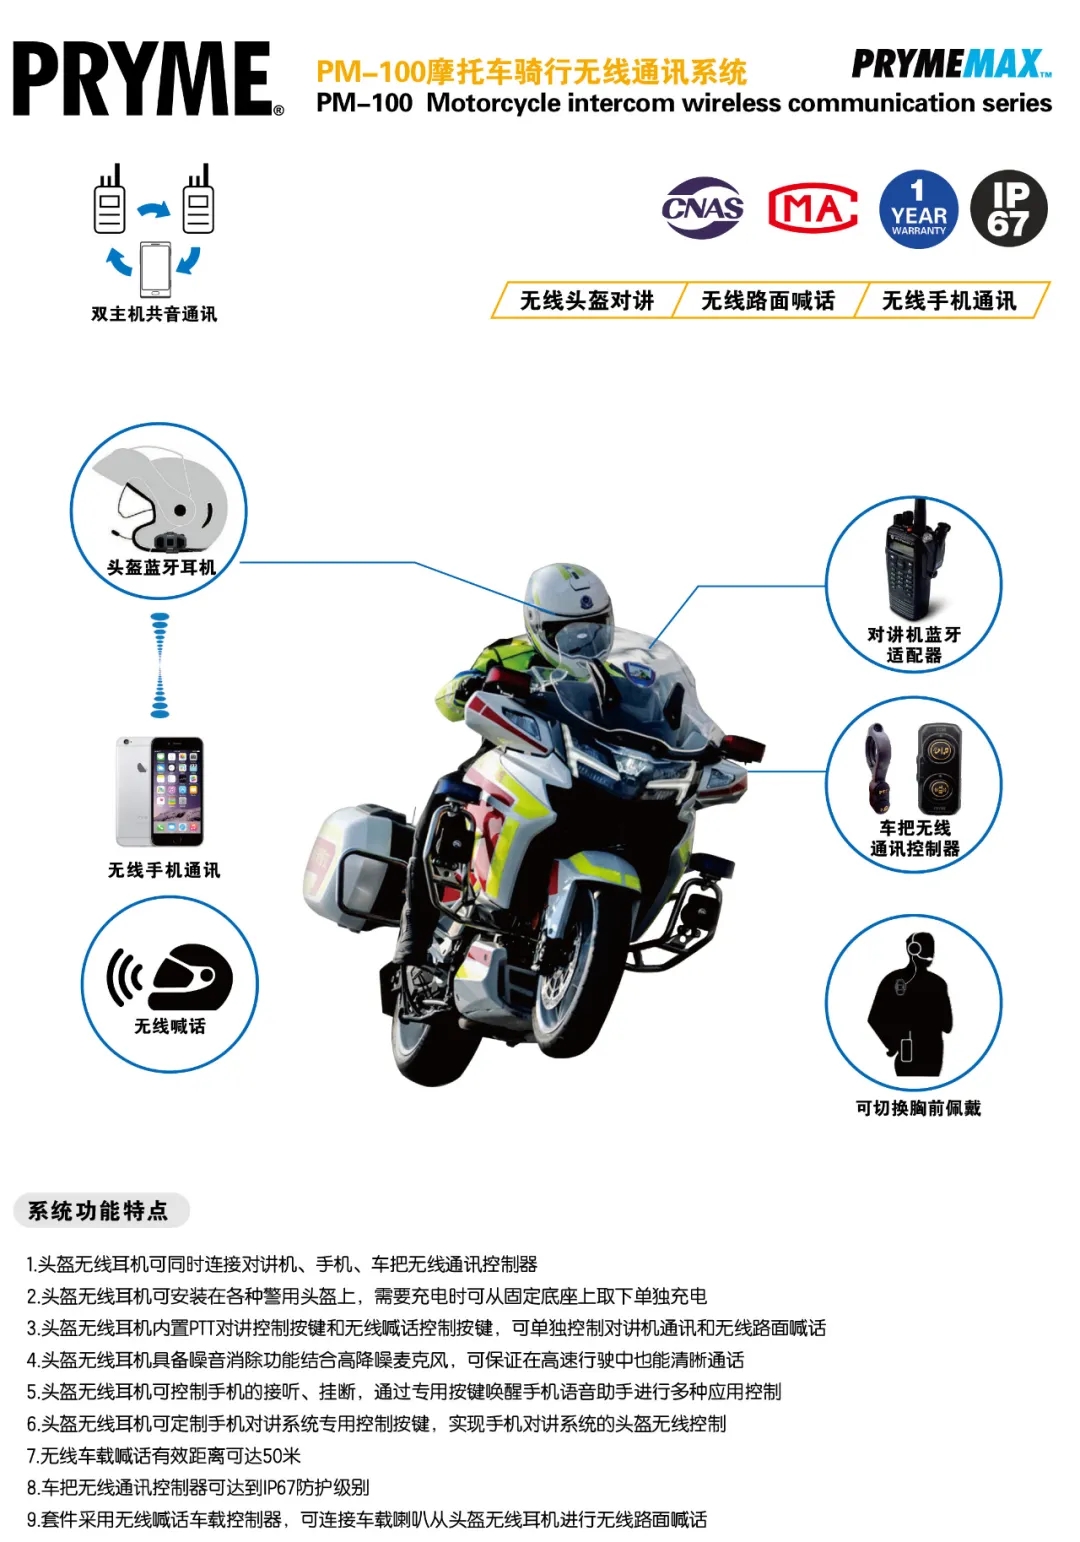 普莱美 PM-100 系列警用摩托车对讲无线多通道骑行通讯系统